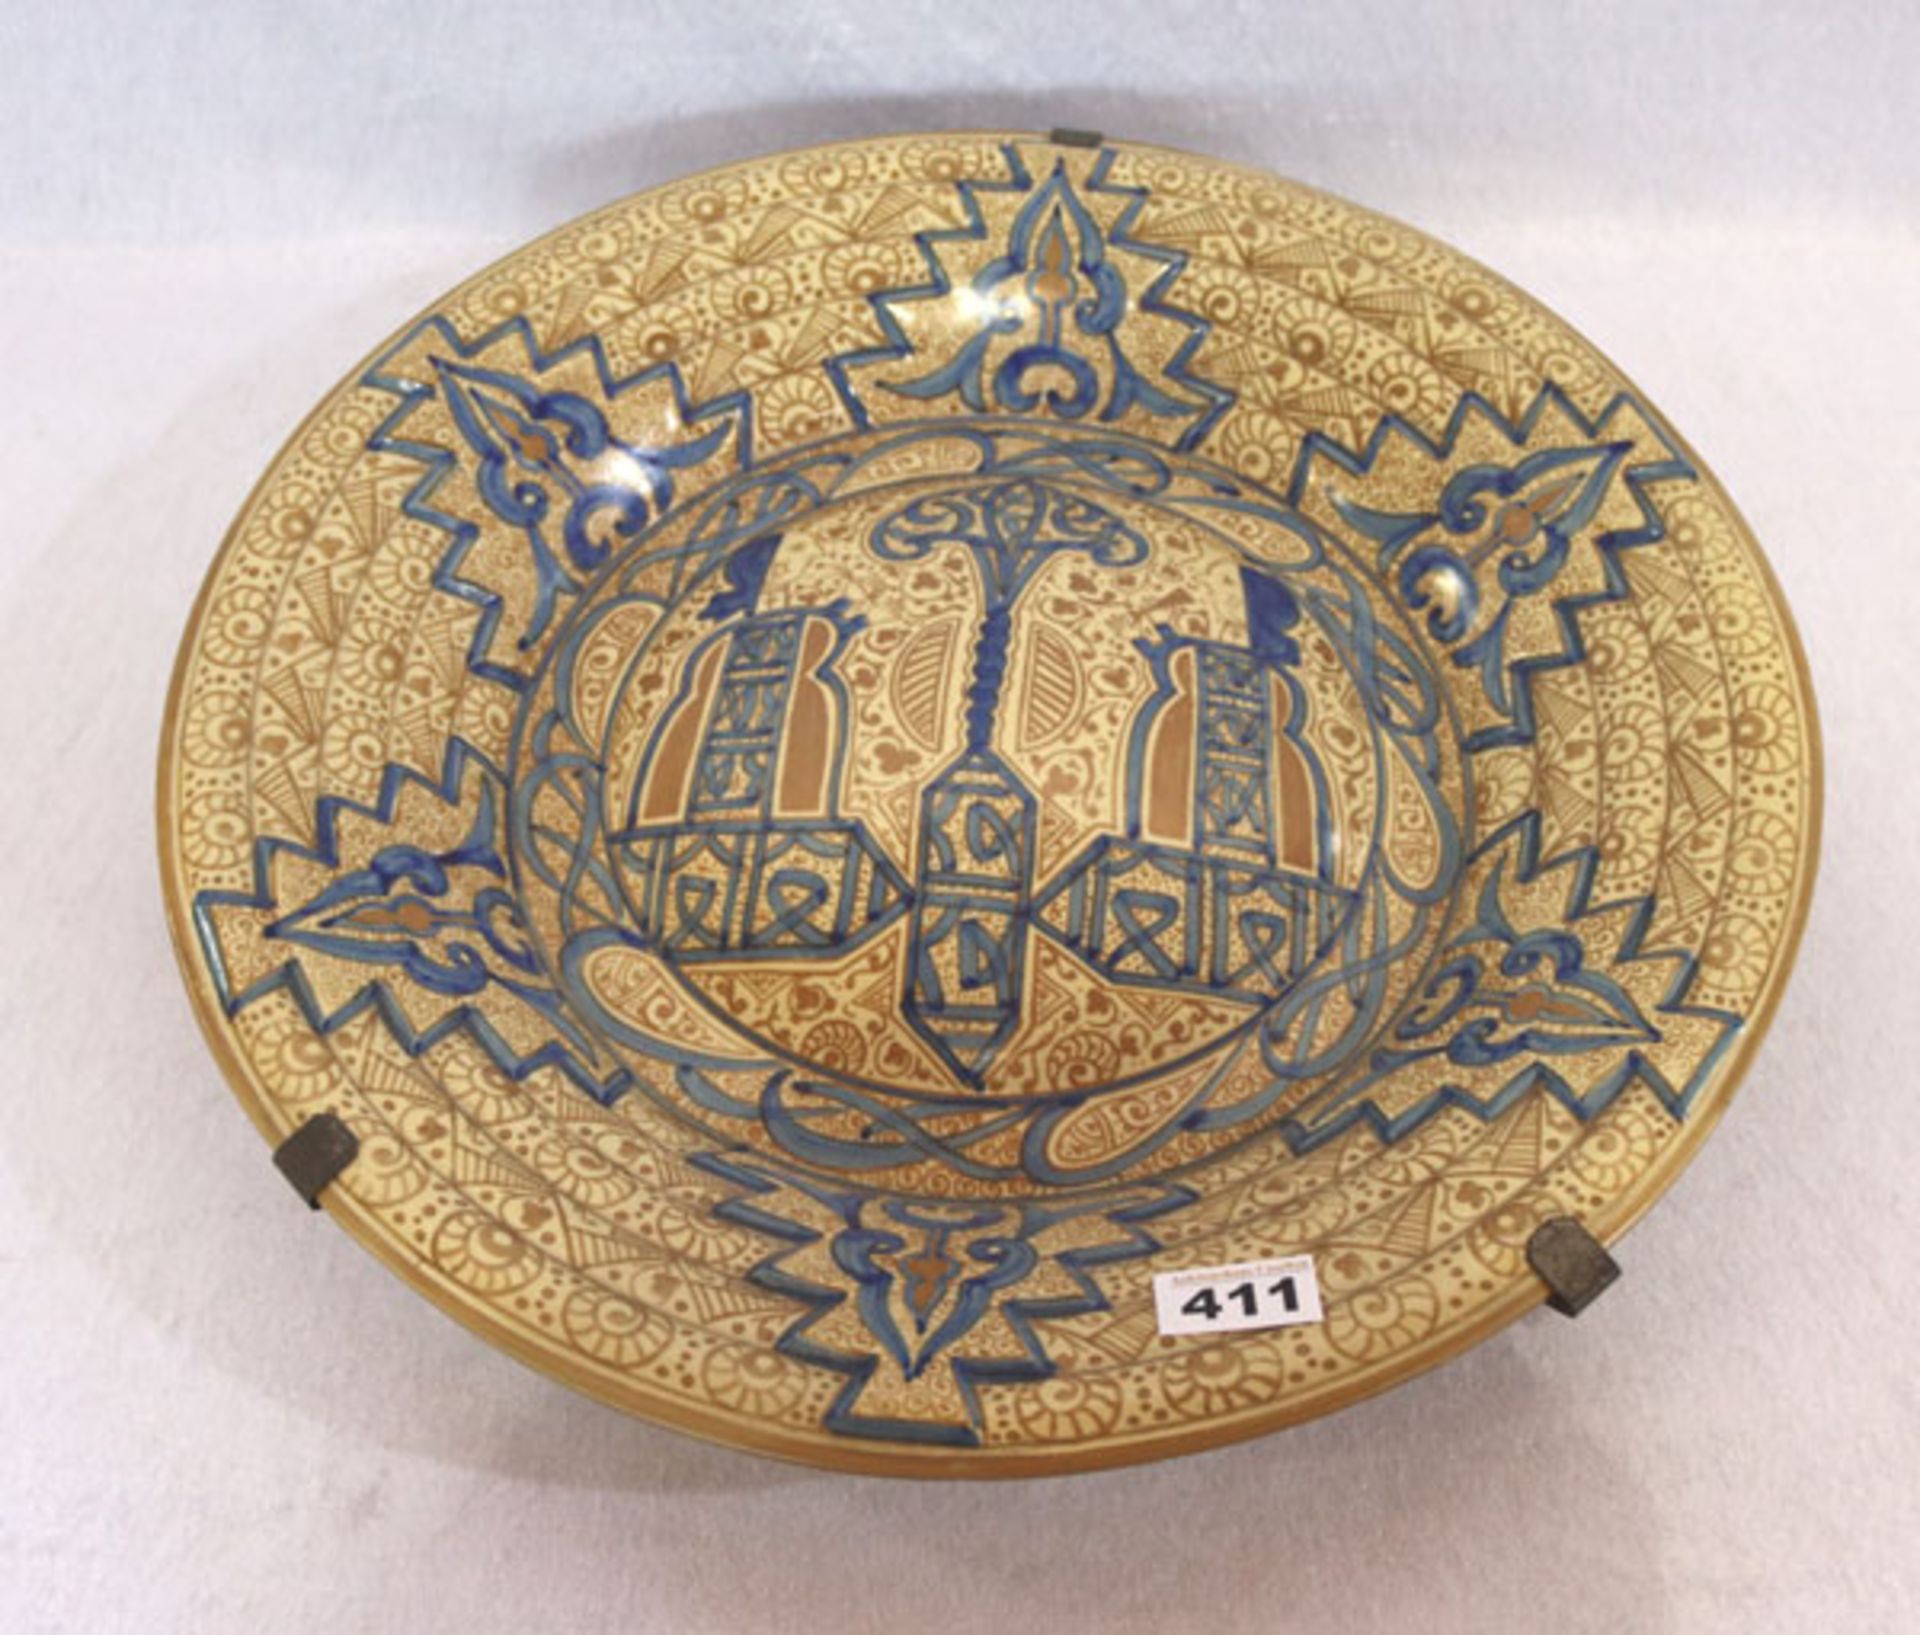 Keramik Wandteller mit braun/blauem Dekor, und Metall Wandhalterung, H 5 cm, D 46 cm